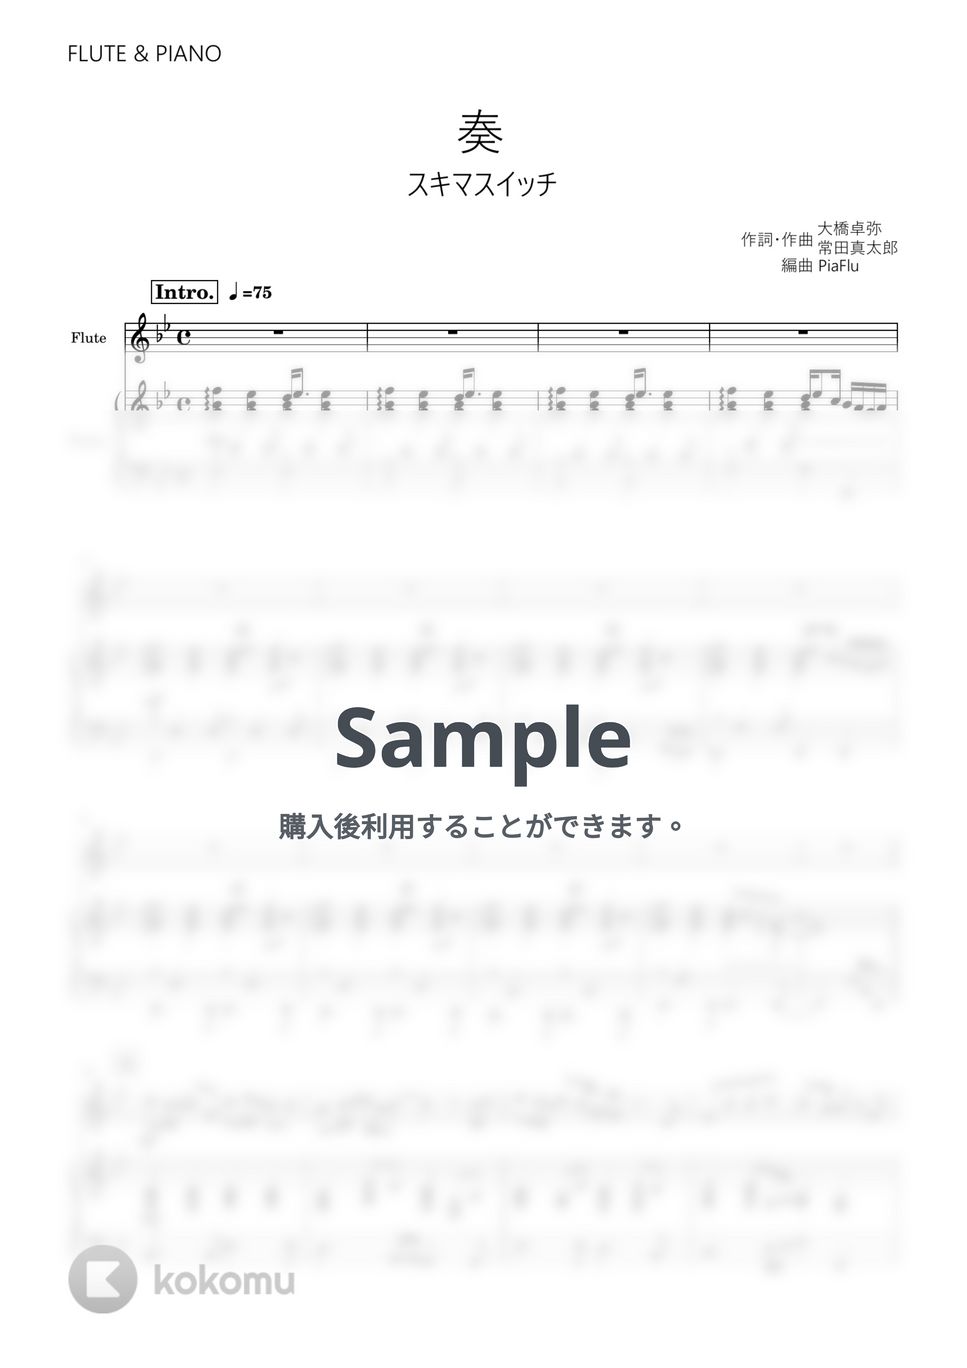 スキマスイッチ - 奏 (フルート&ピアノ伴奏) by PiaFlu